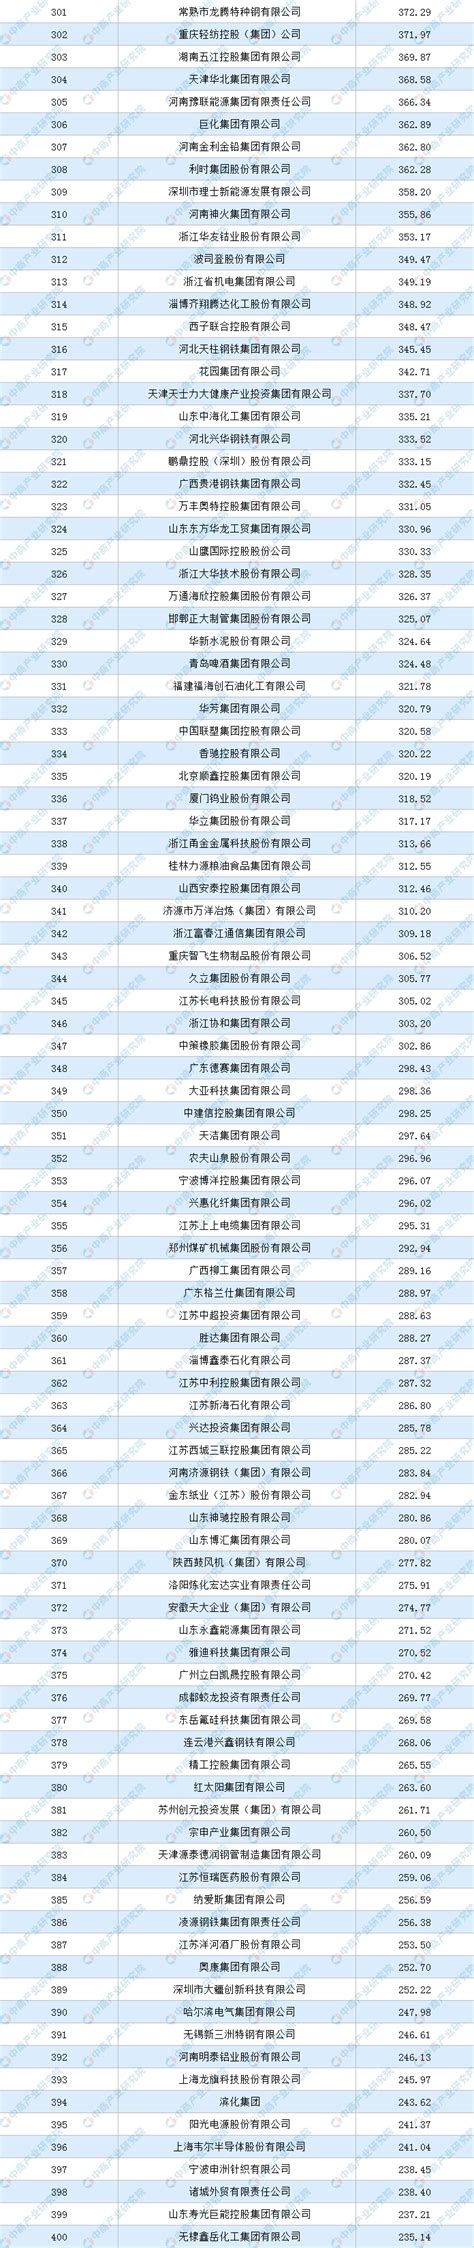 2017中国互联网 100 强企业发明专利排行榜